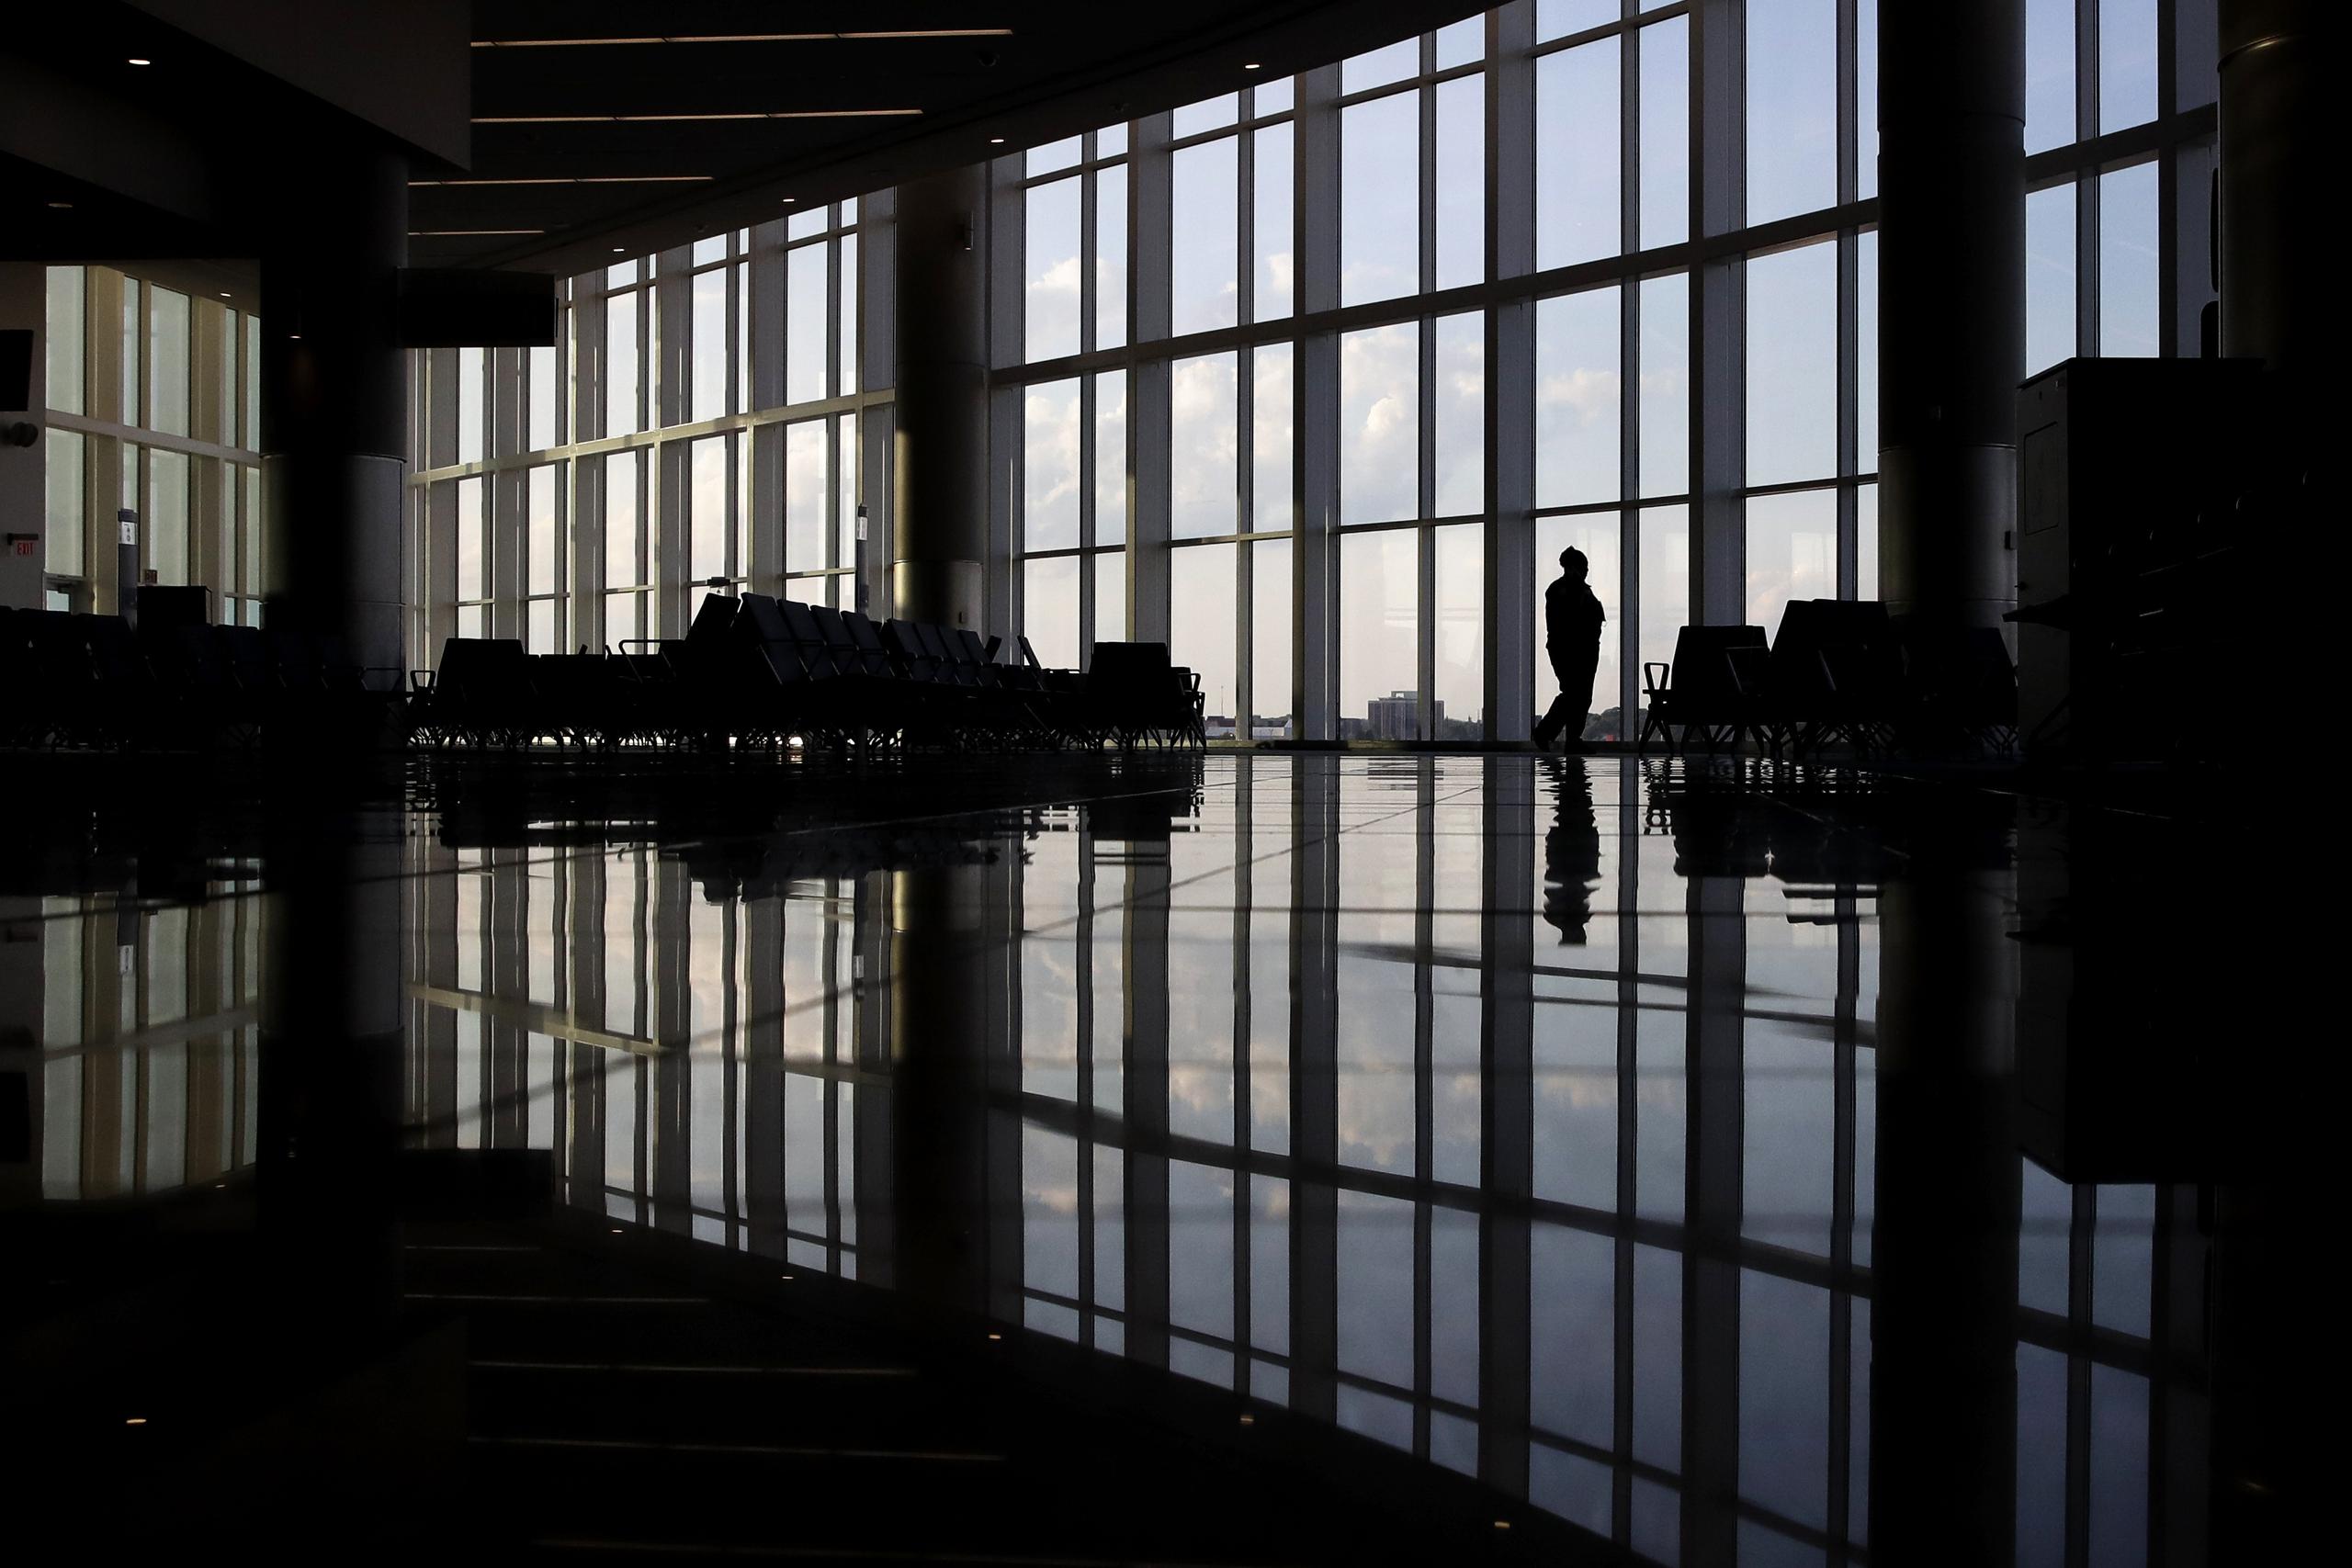 Una mujer mira por una ventana en una terminal casi vacía en el aeropuerto de Atlanta.